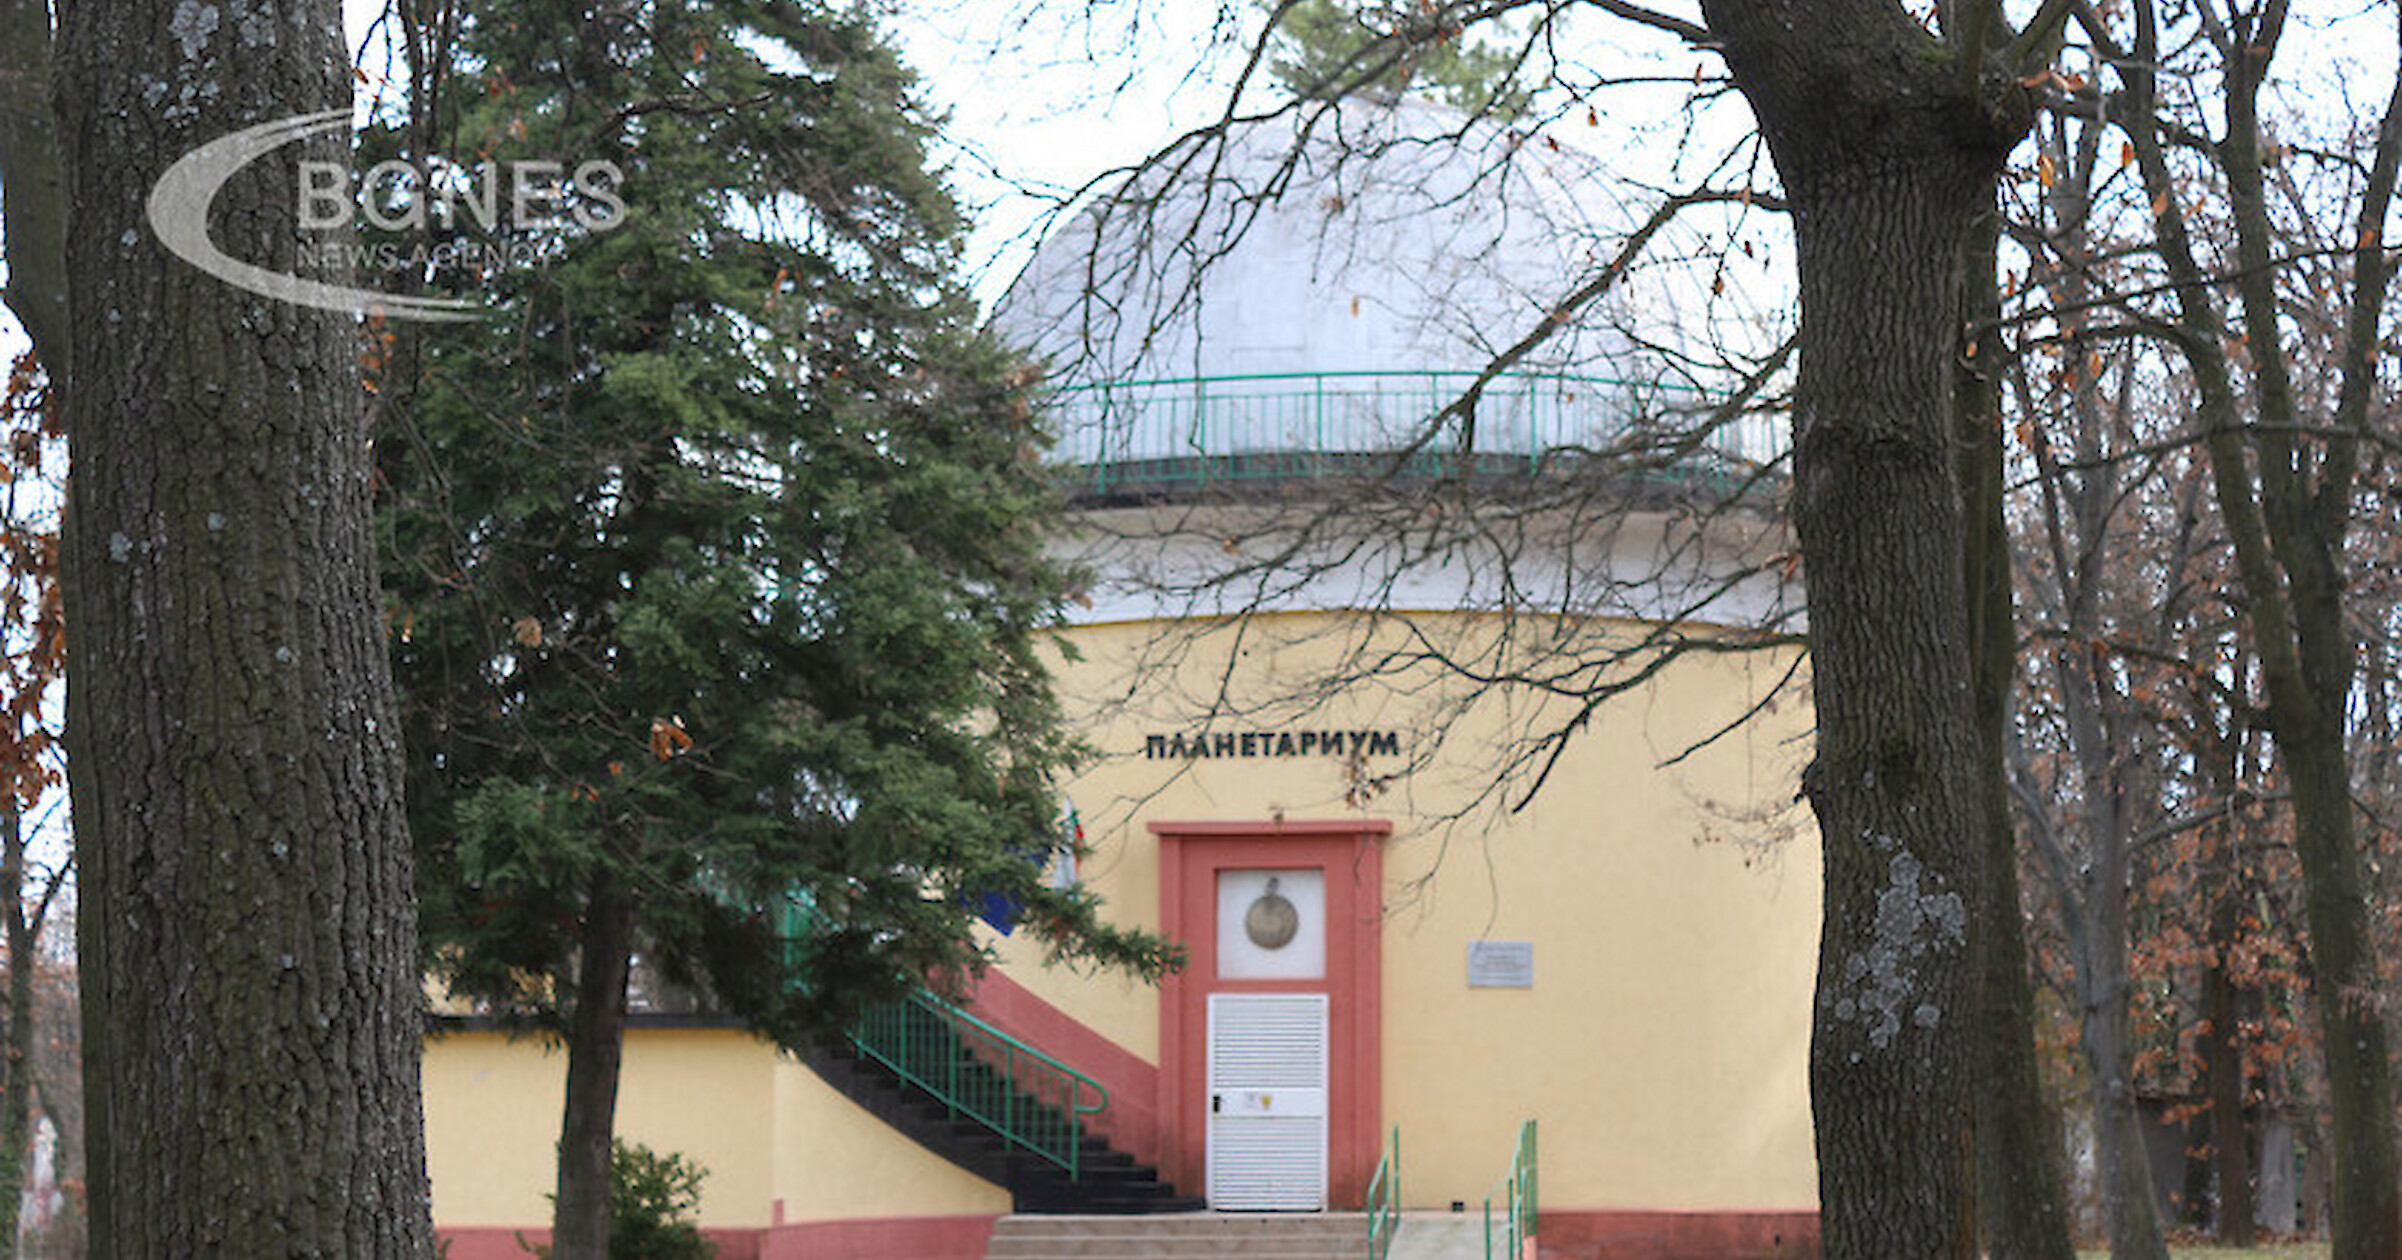 Първият планетариум в България е построен в Димитровград Той е